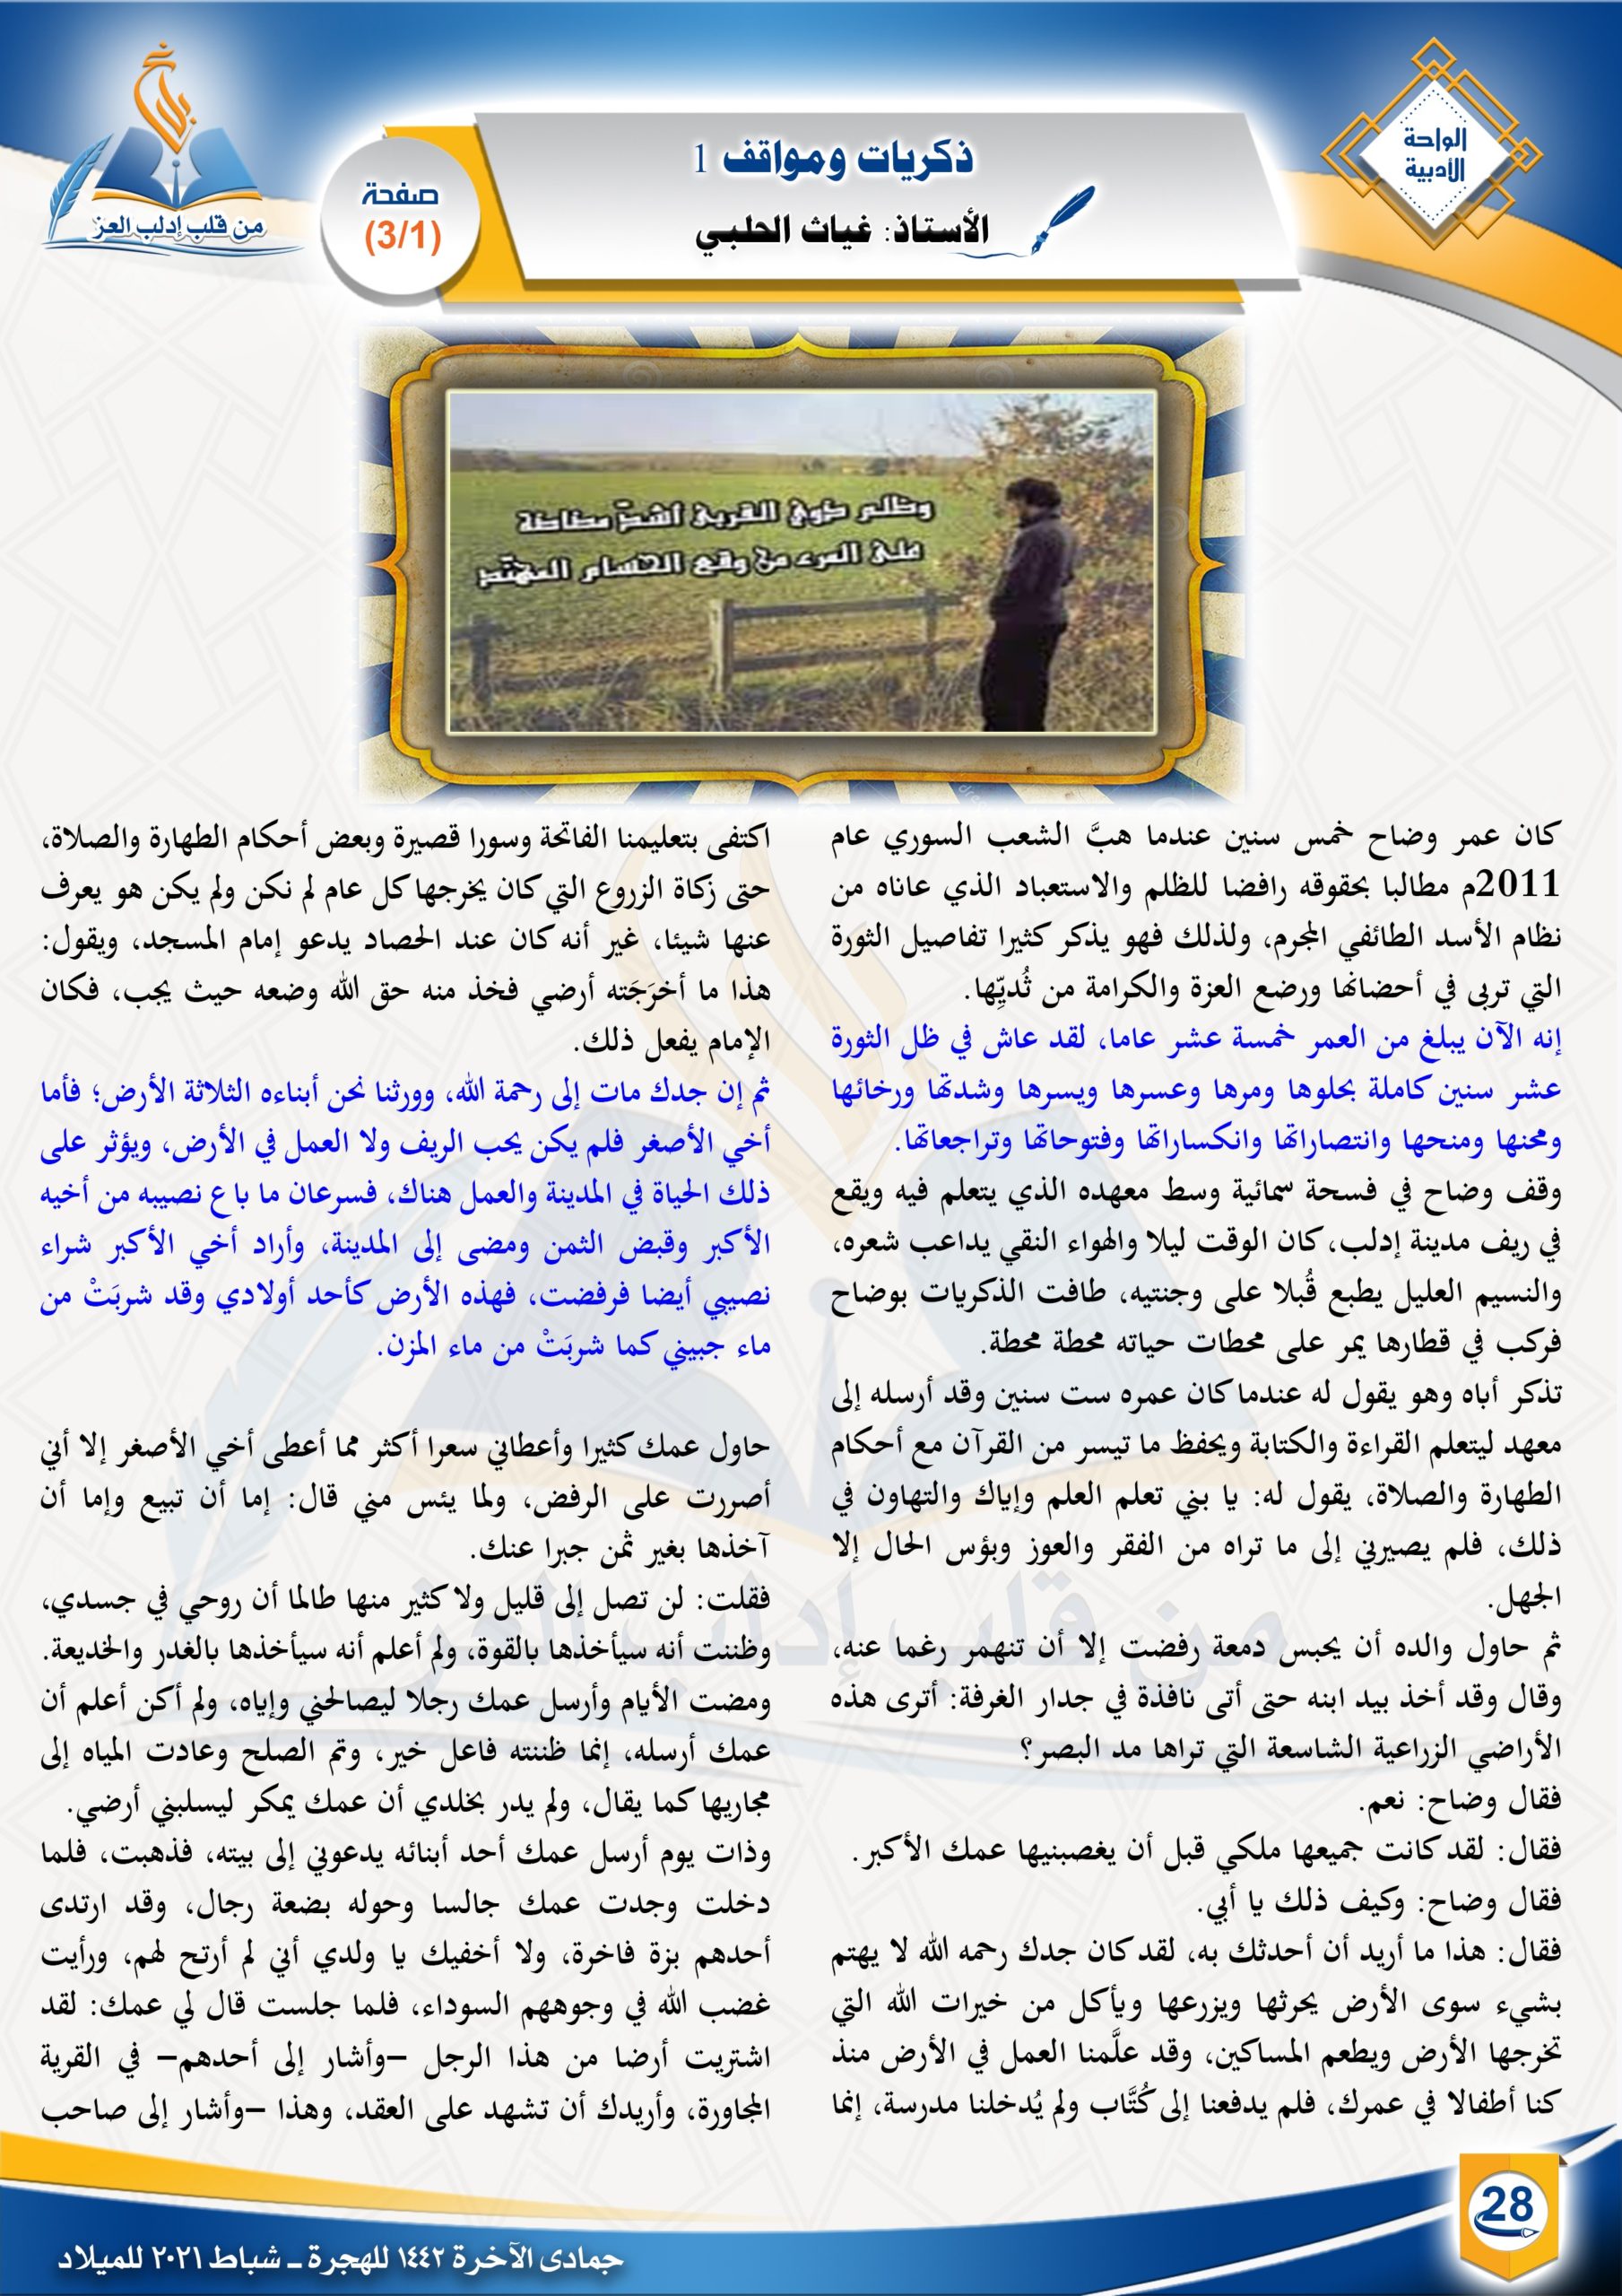 ذكريات ومواقف |الواحة الأدبية| مجلة بلاغ العدد 20 جمادى الآخرة 1442 الأستاذ غياث الحلبي